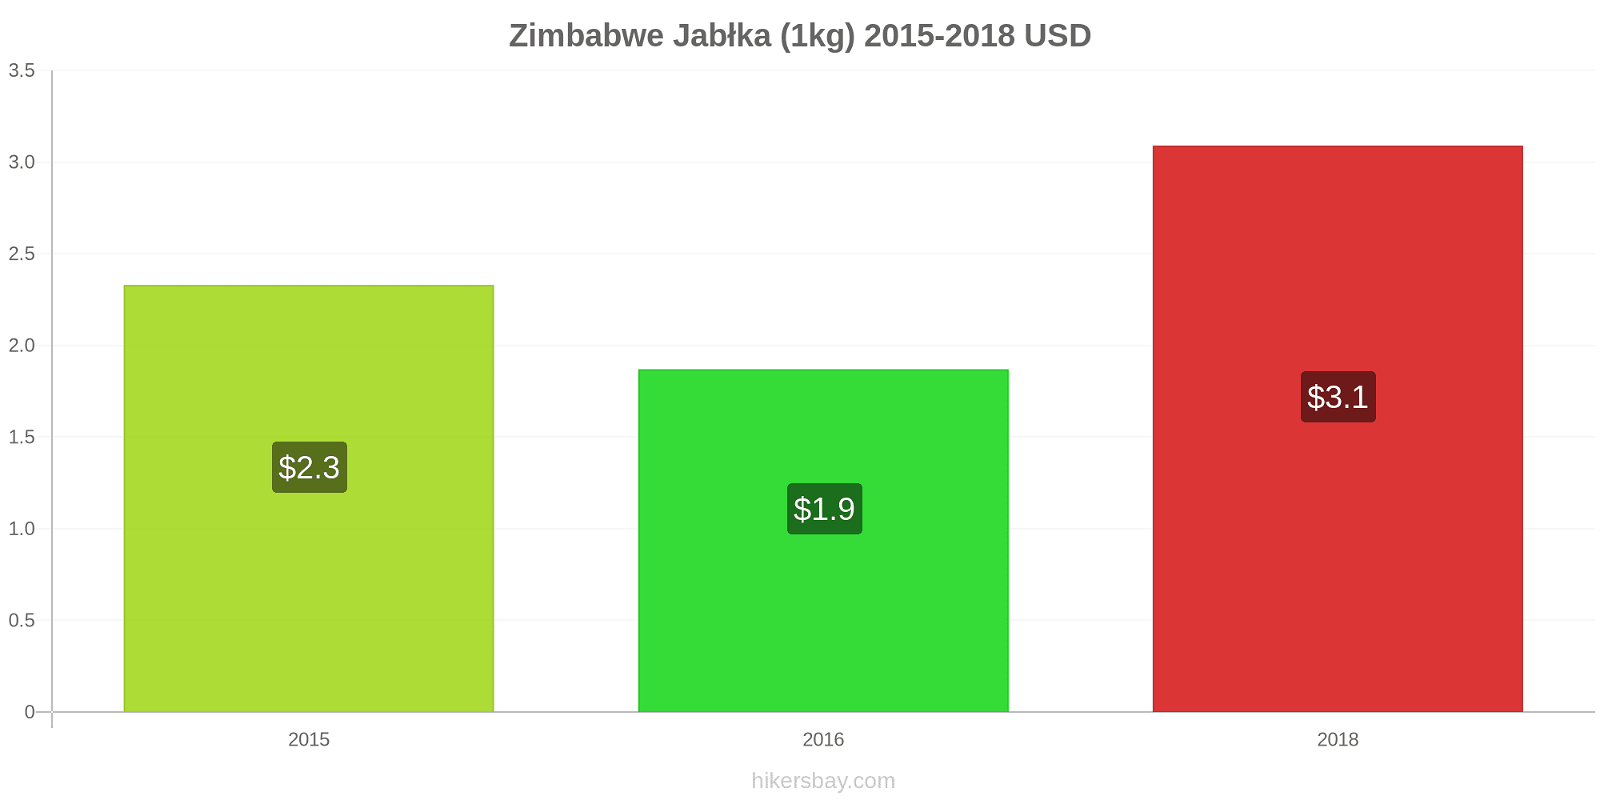 Zimbabwe zmiany cen Jabłka (1kg) hikersbay.com